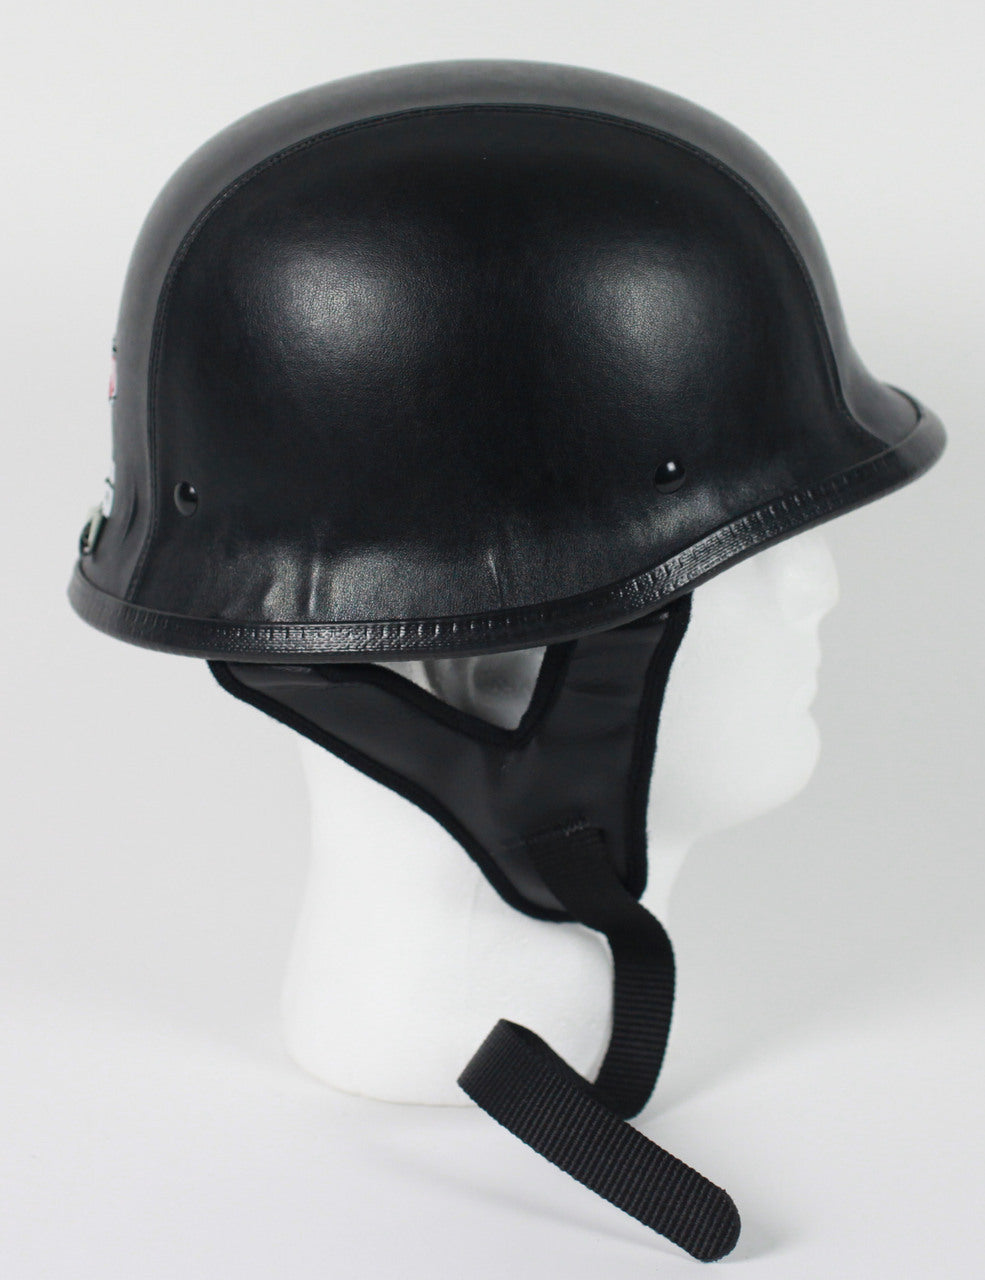 Rodia Leather German Motorcycle Helmet